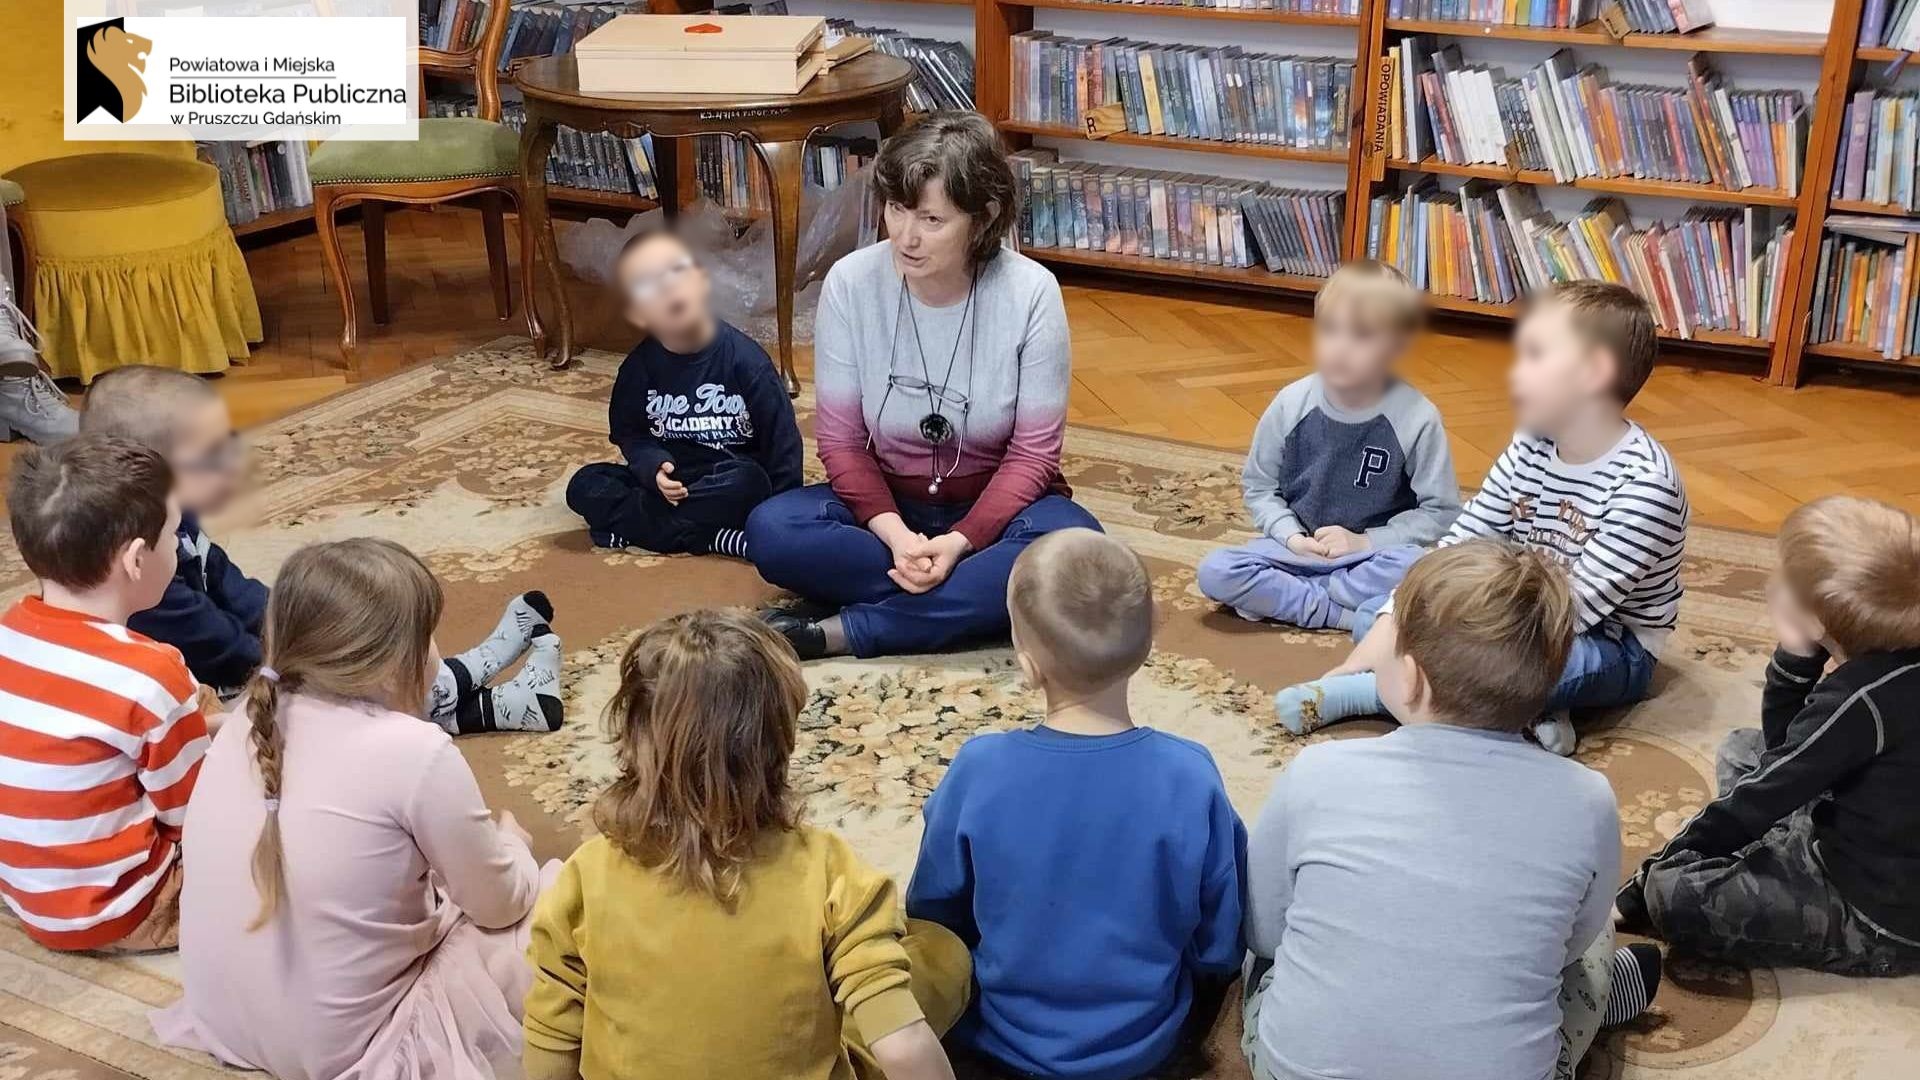 Grupa dzieci siedzi w okręgu na dywanie. Między nimi siedzi bibliotekarka. W tle regały z książkami oraz stolik, na którym leży drewniany teatrzyk.